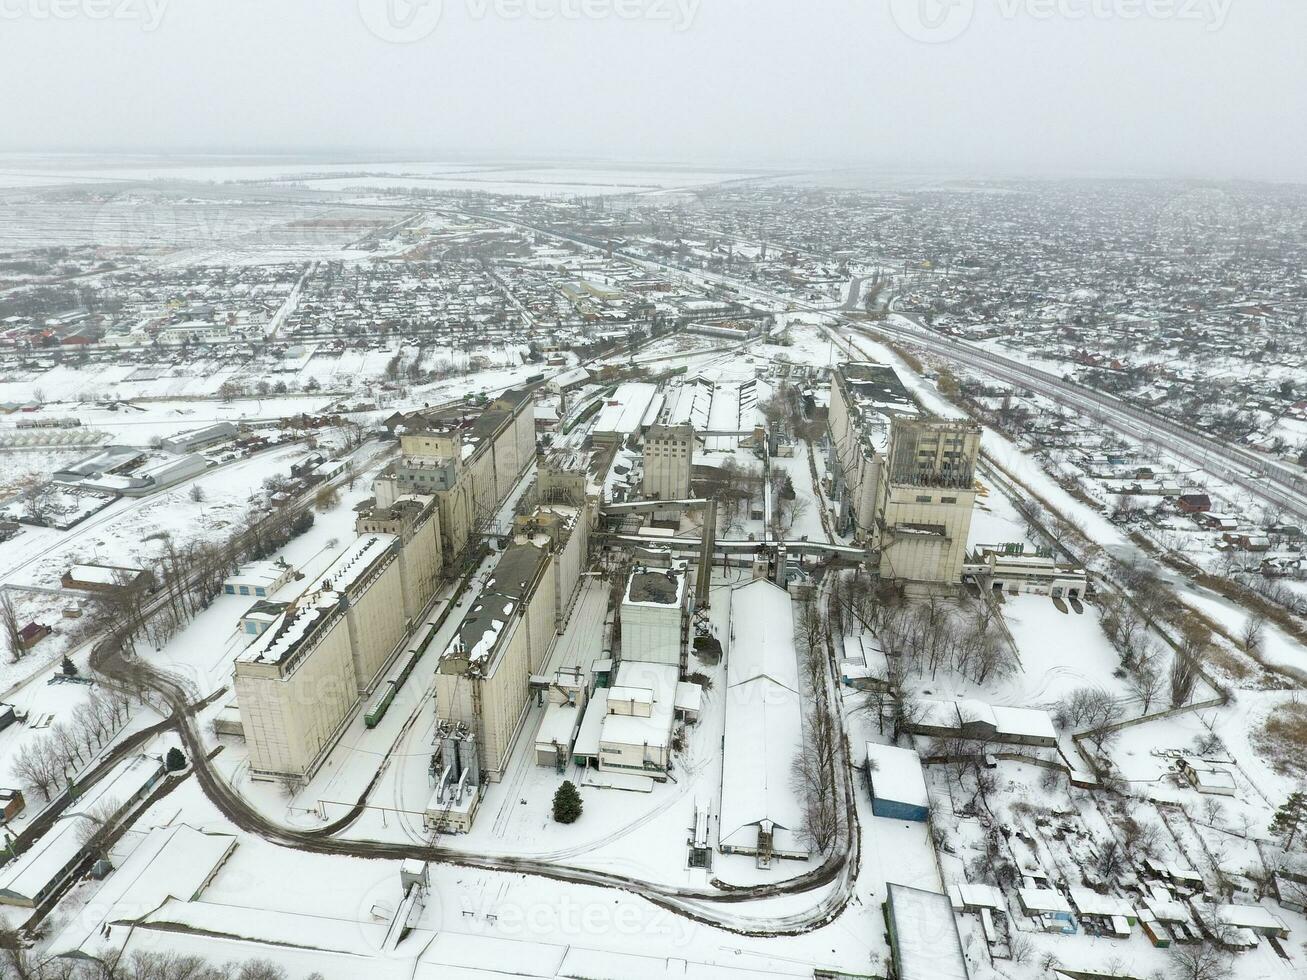 besprenkeld met sneeuw graan lift. winter visie van de oud Sovjet lift. winter visie van de vogel oog visie van de dorp. de straten zijn gedekt met sneeuw foto